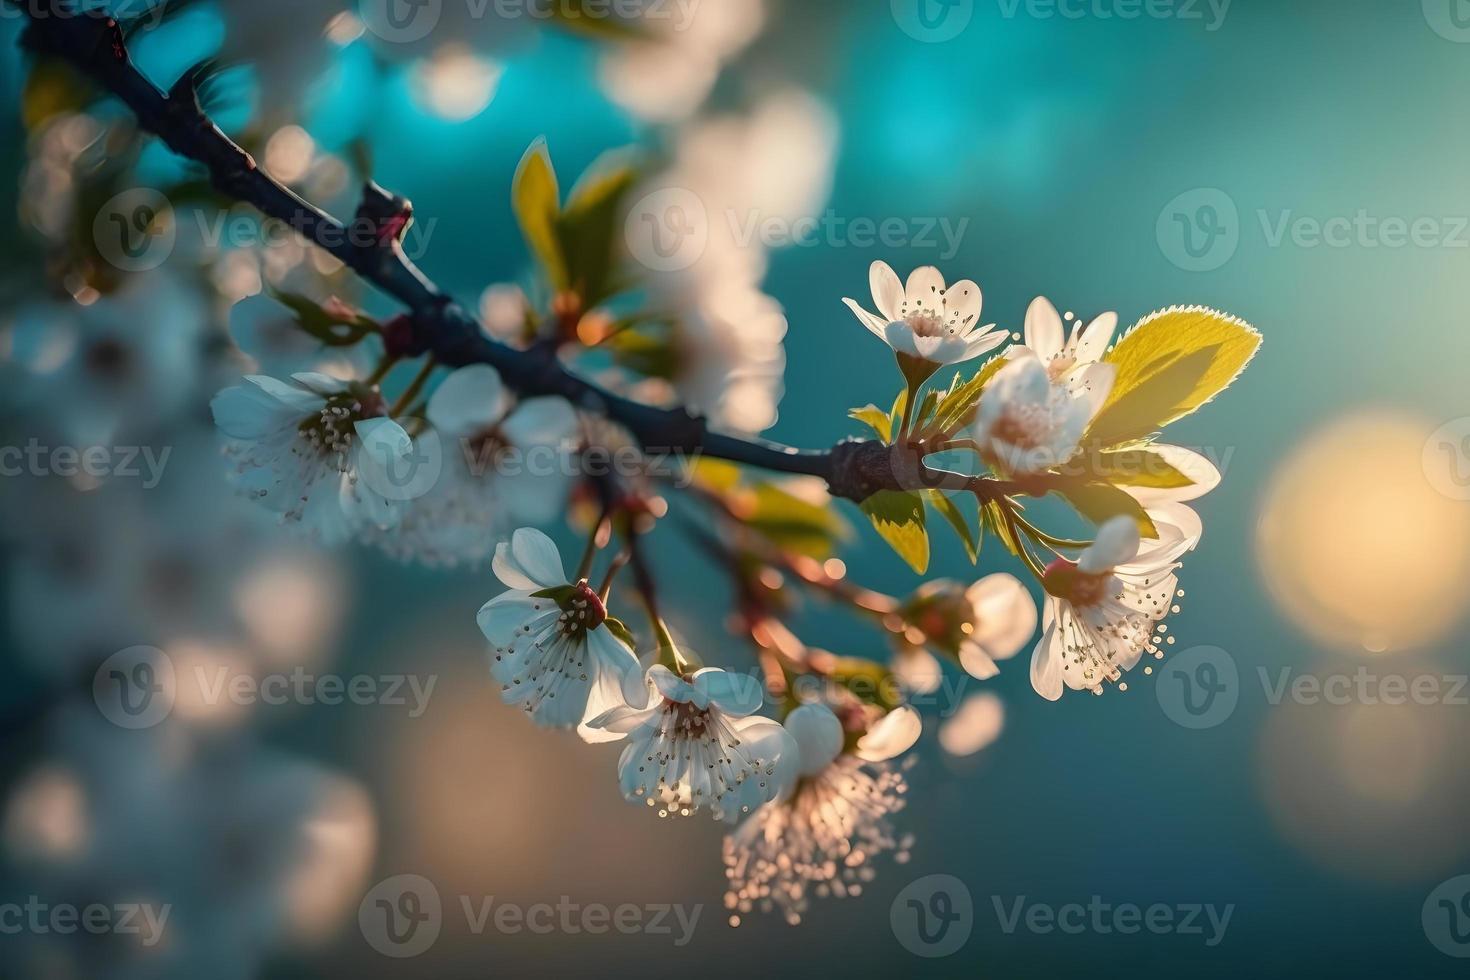 fotos galhos do florescendo cereja macro com suave foco em □ Gentil luz azul céu fundo dentro luz solar com cópia de espaço. lindo floral imagem do Primavera natureza, fotografia